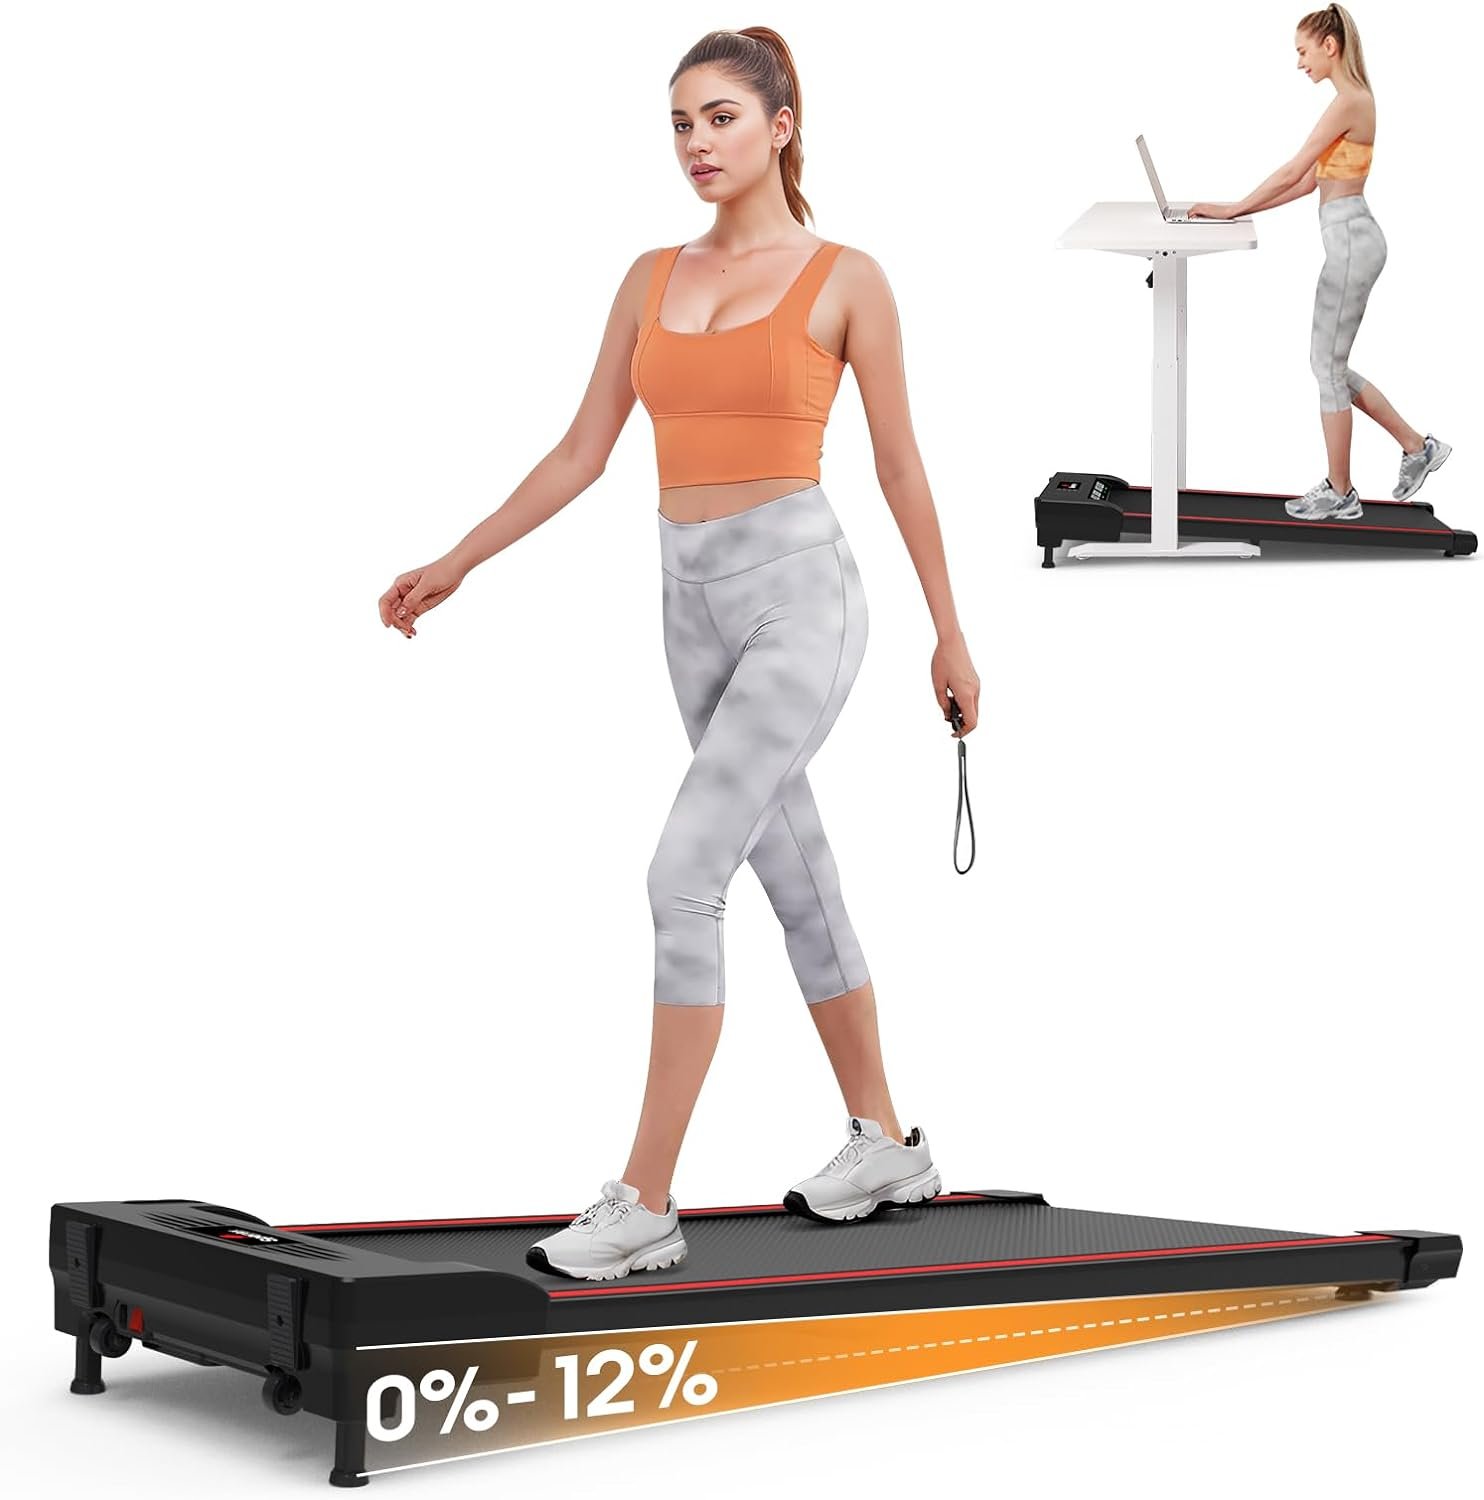 SPERAX Incline Treadmill